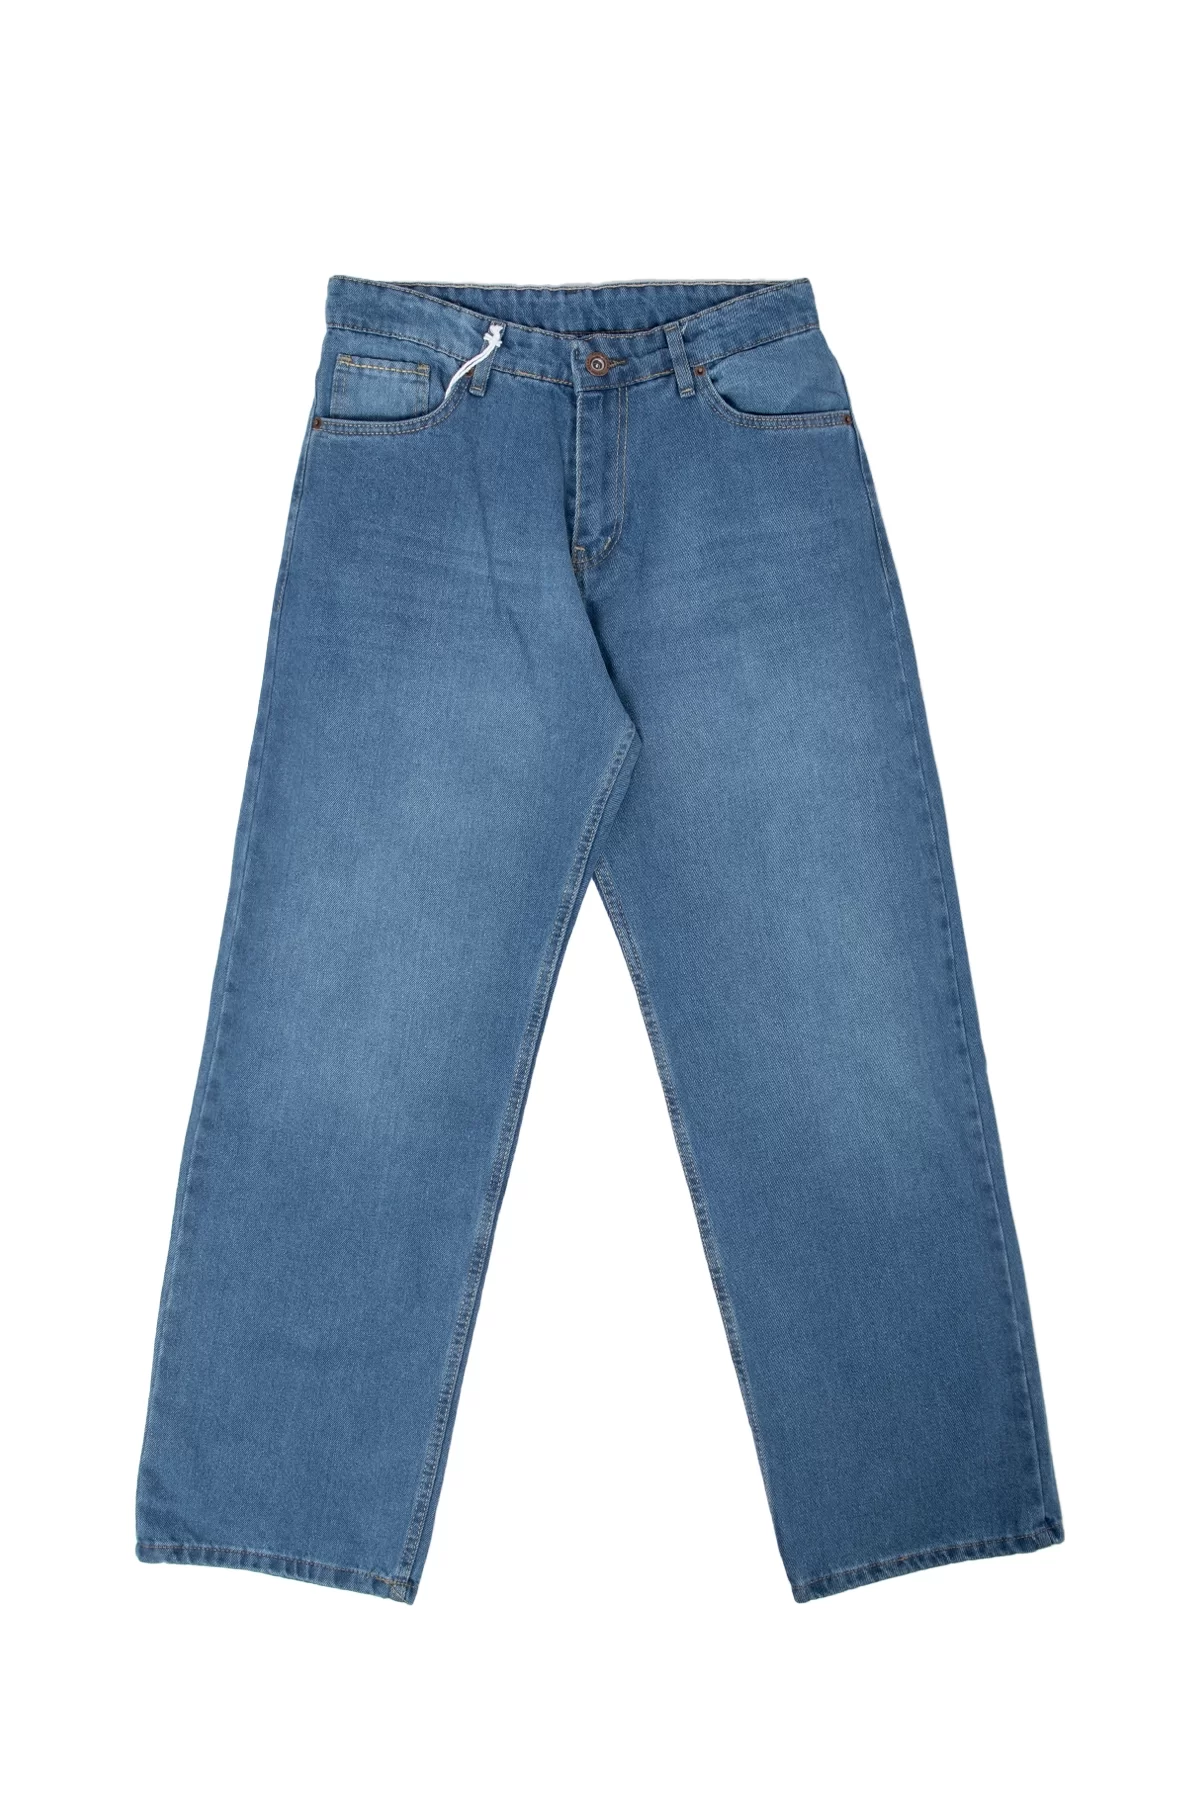 Mavi Baggy Fit Premium Pantolon